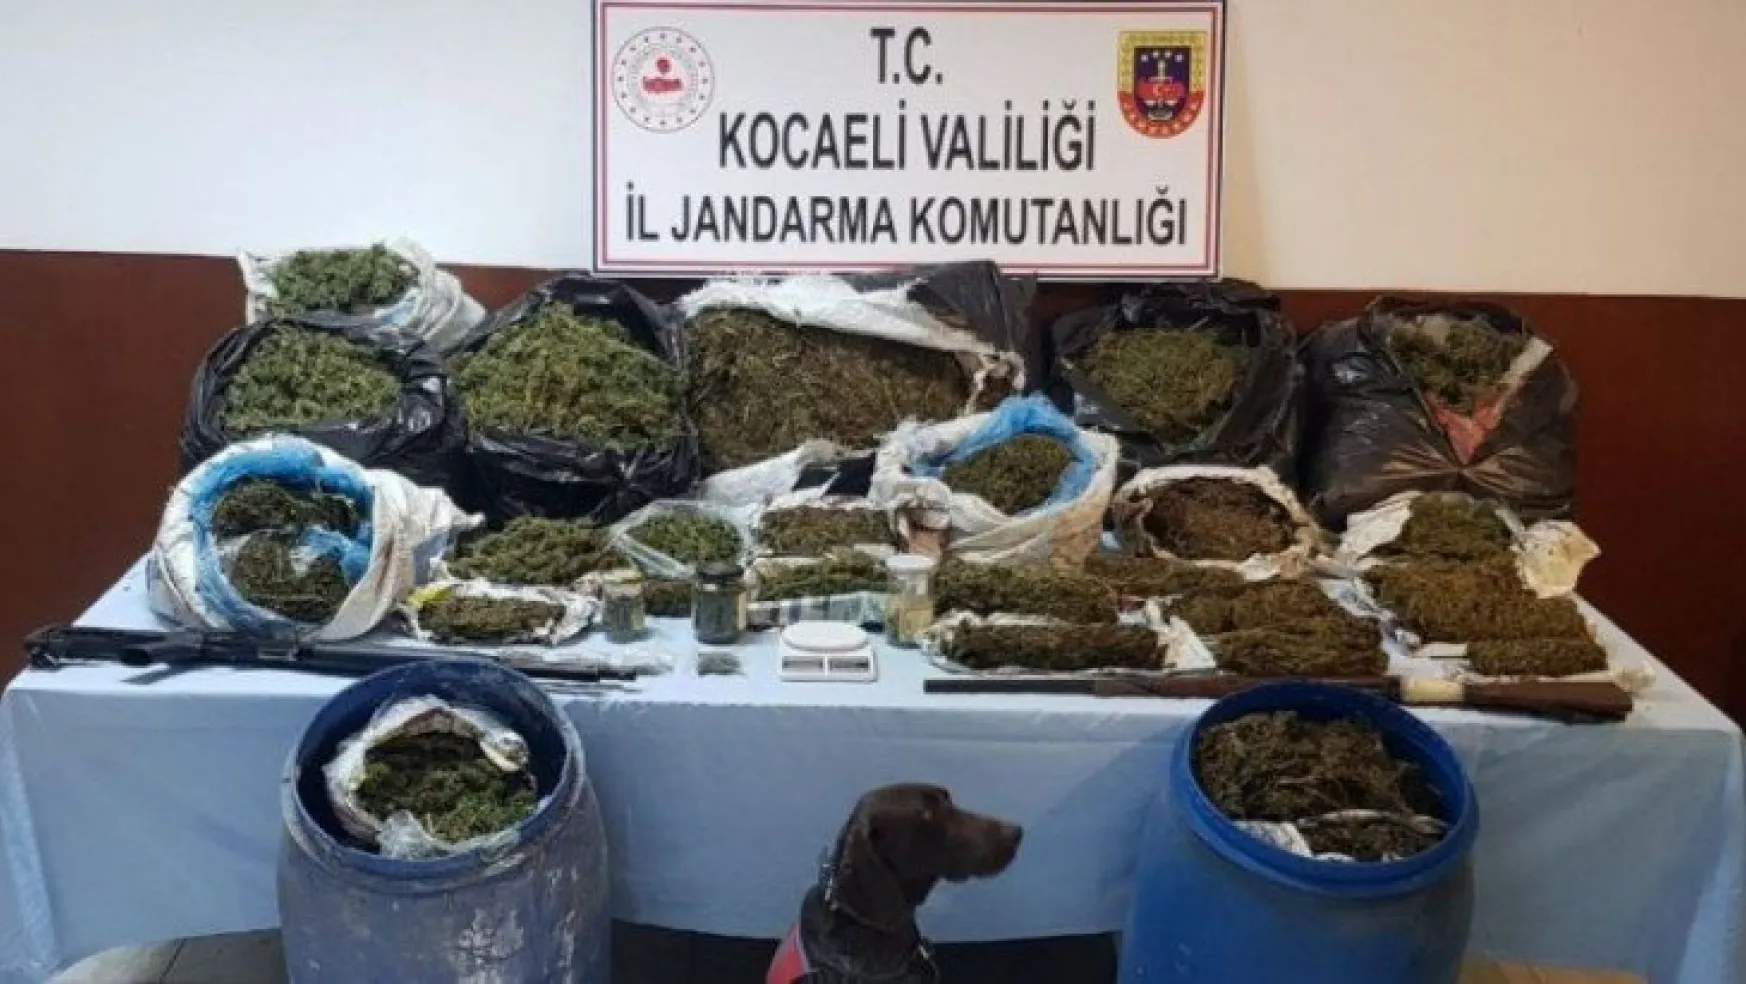 Kocaeli'de 61 kilo uyuşturucu ile yakalan 2 kişi tutuklandı